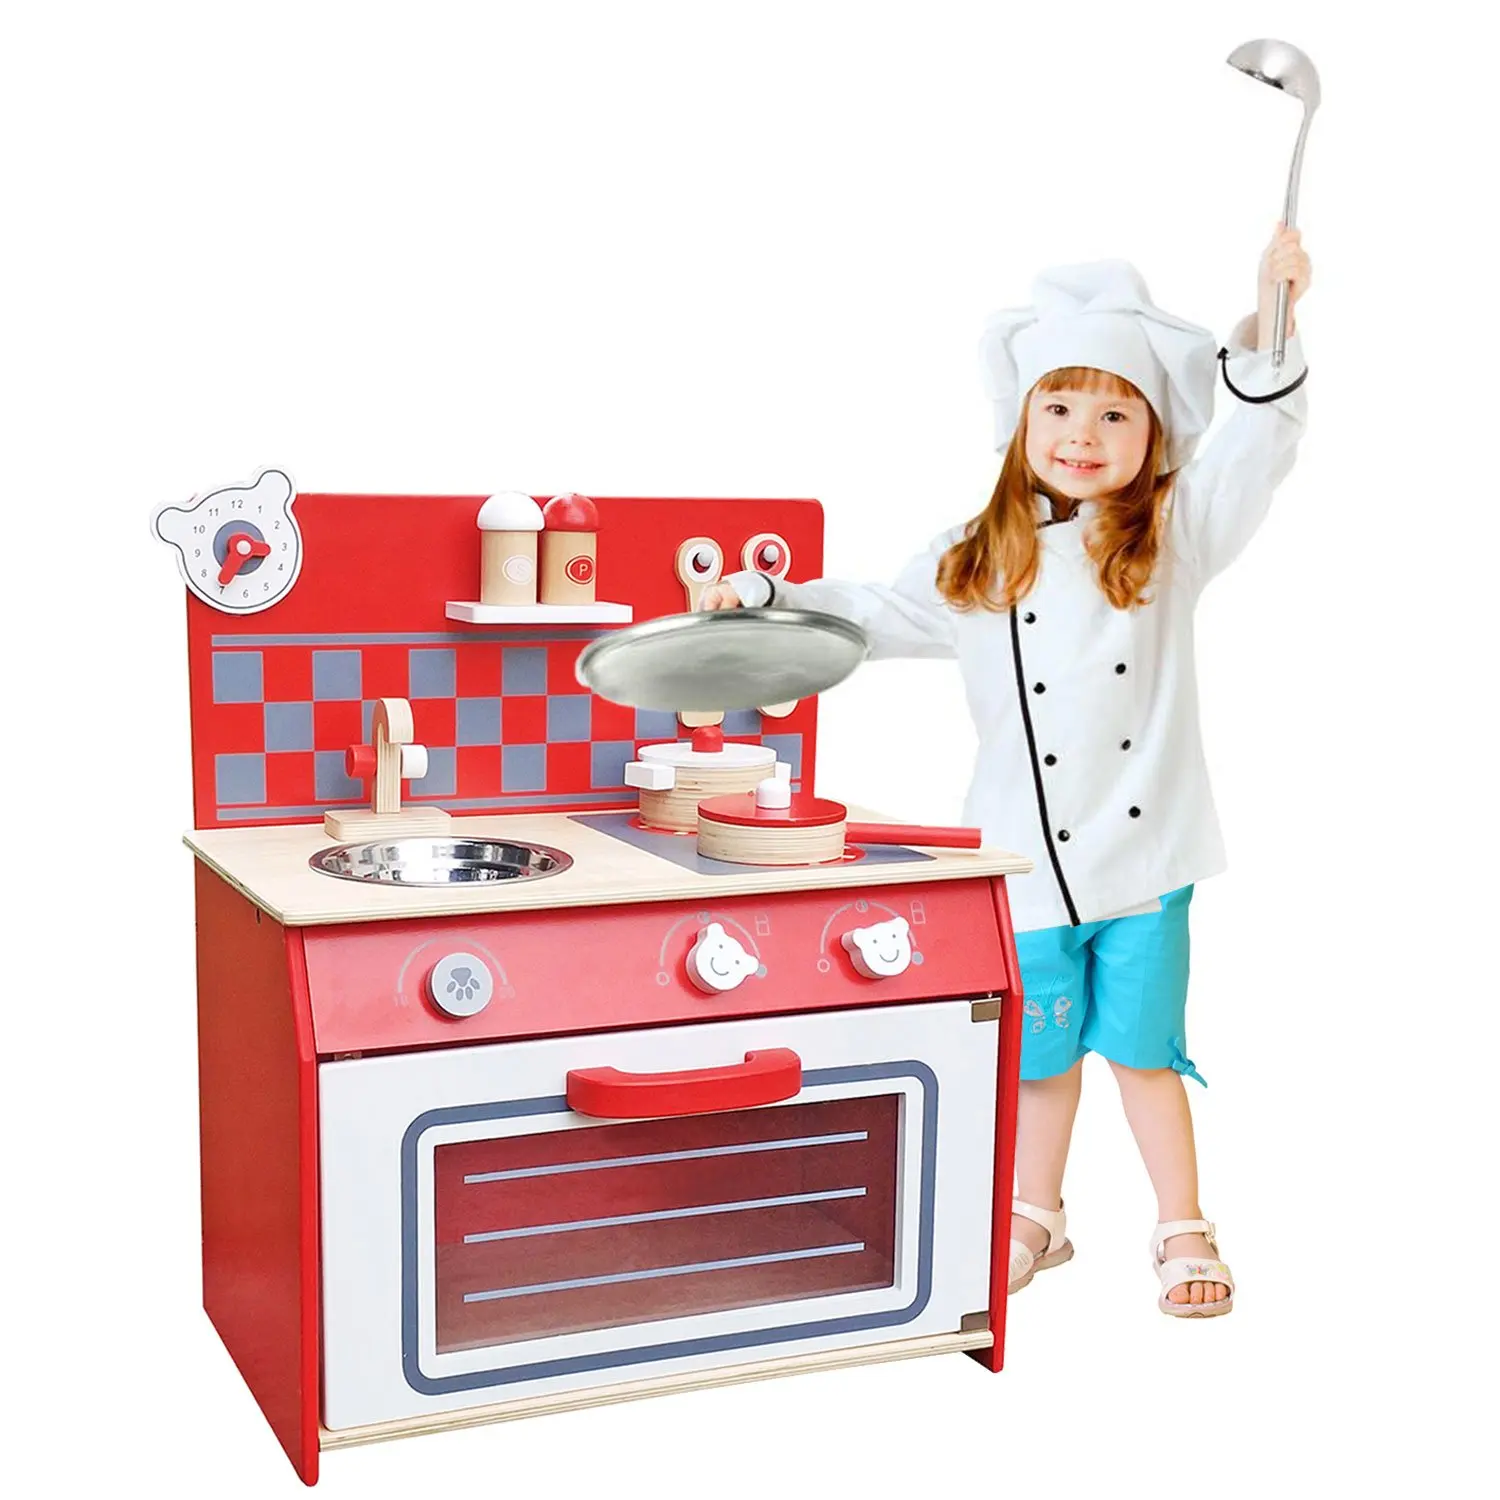 children's role play kitchen accessories